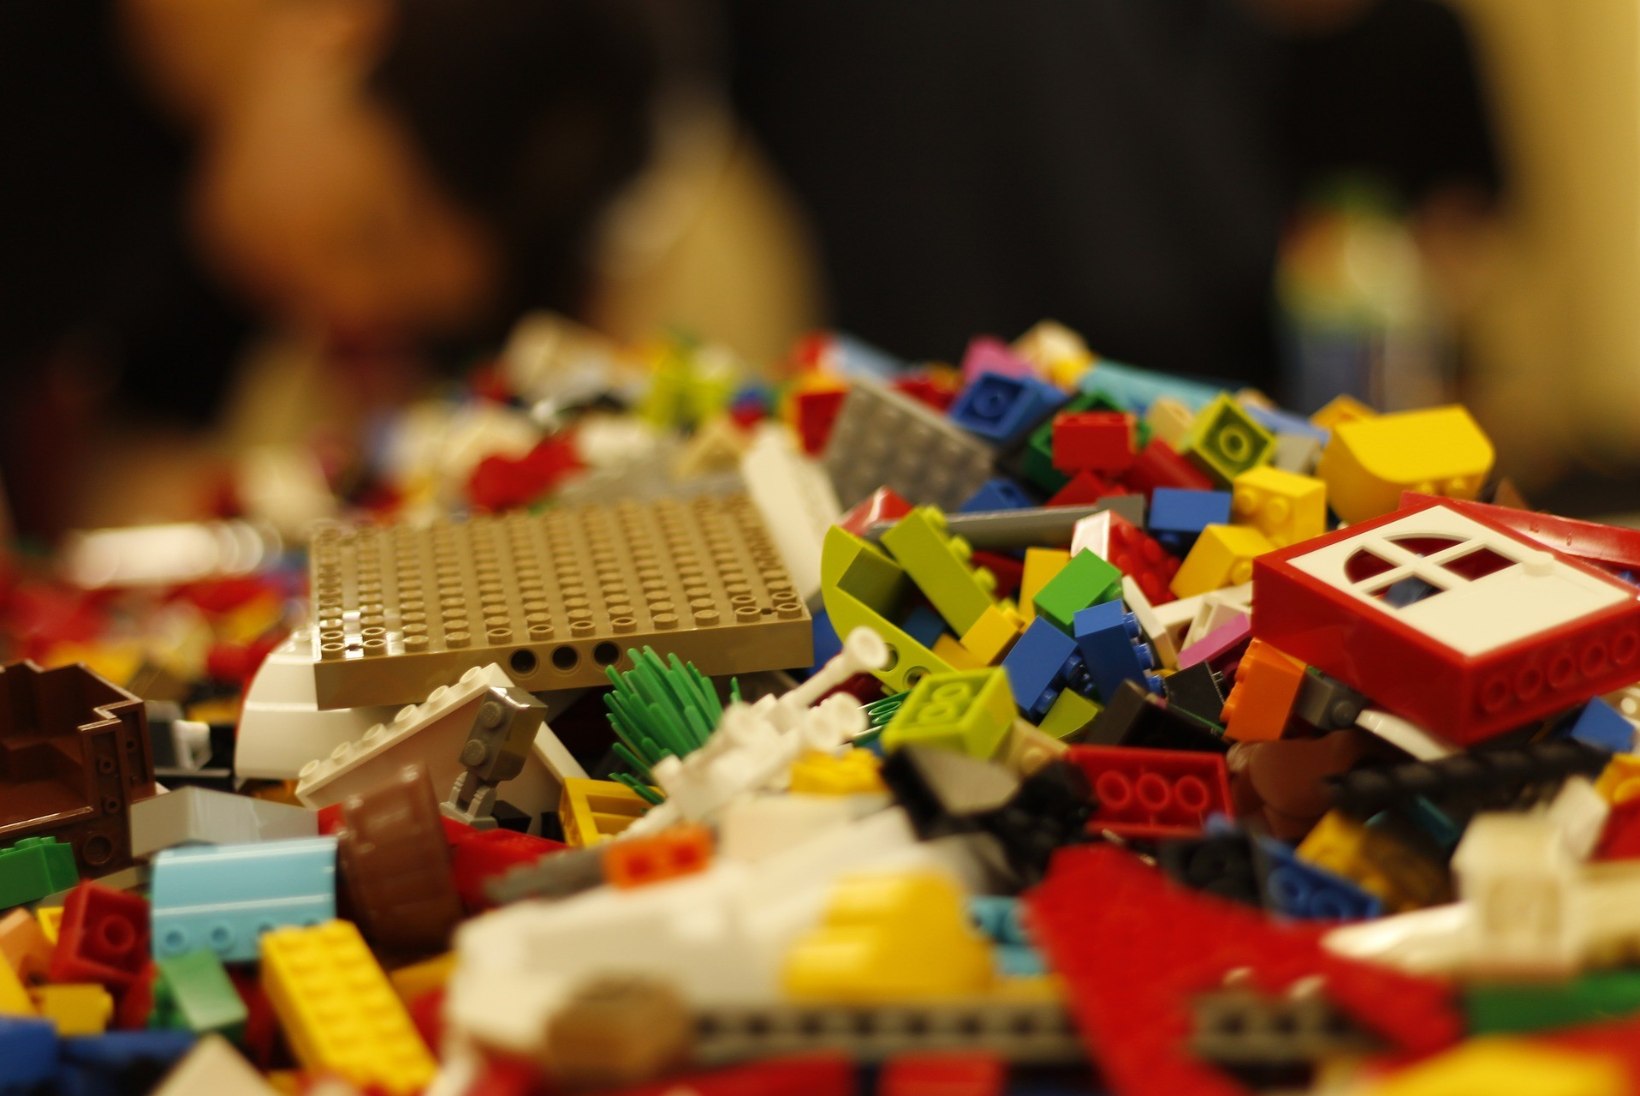 VIDEO | Legod vallutavad kodu? Pääsetee on olemas!